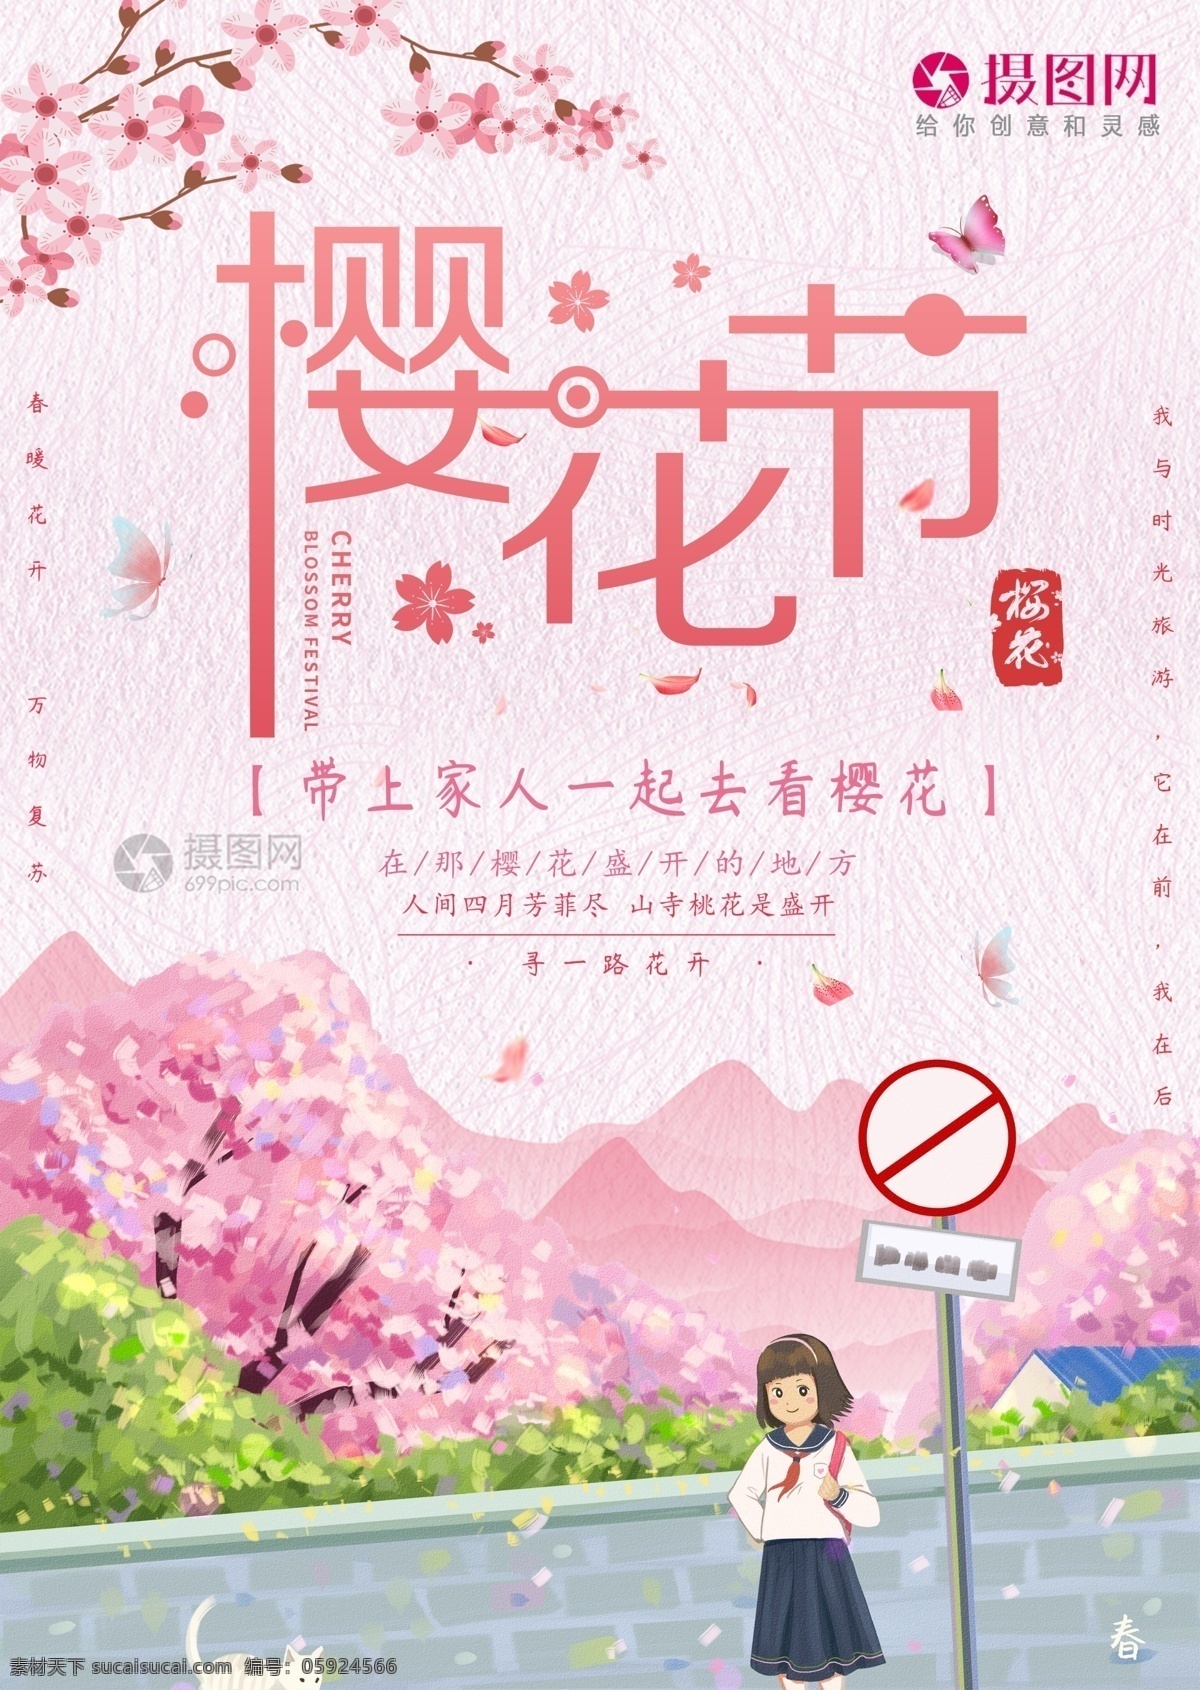 粉色 日本 樱花节 宣传海报 节日 宣传 海报 旅游海报 赏花 粉色浪漫